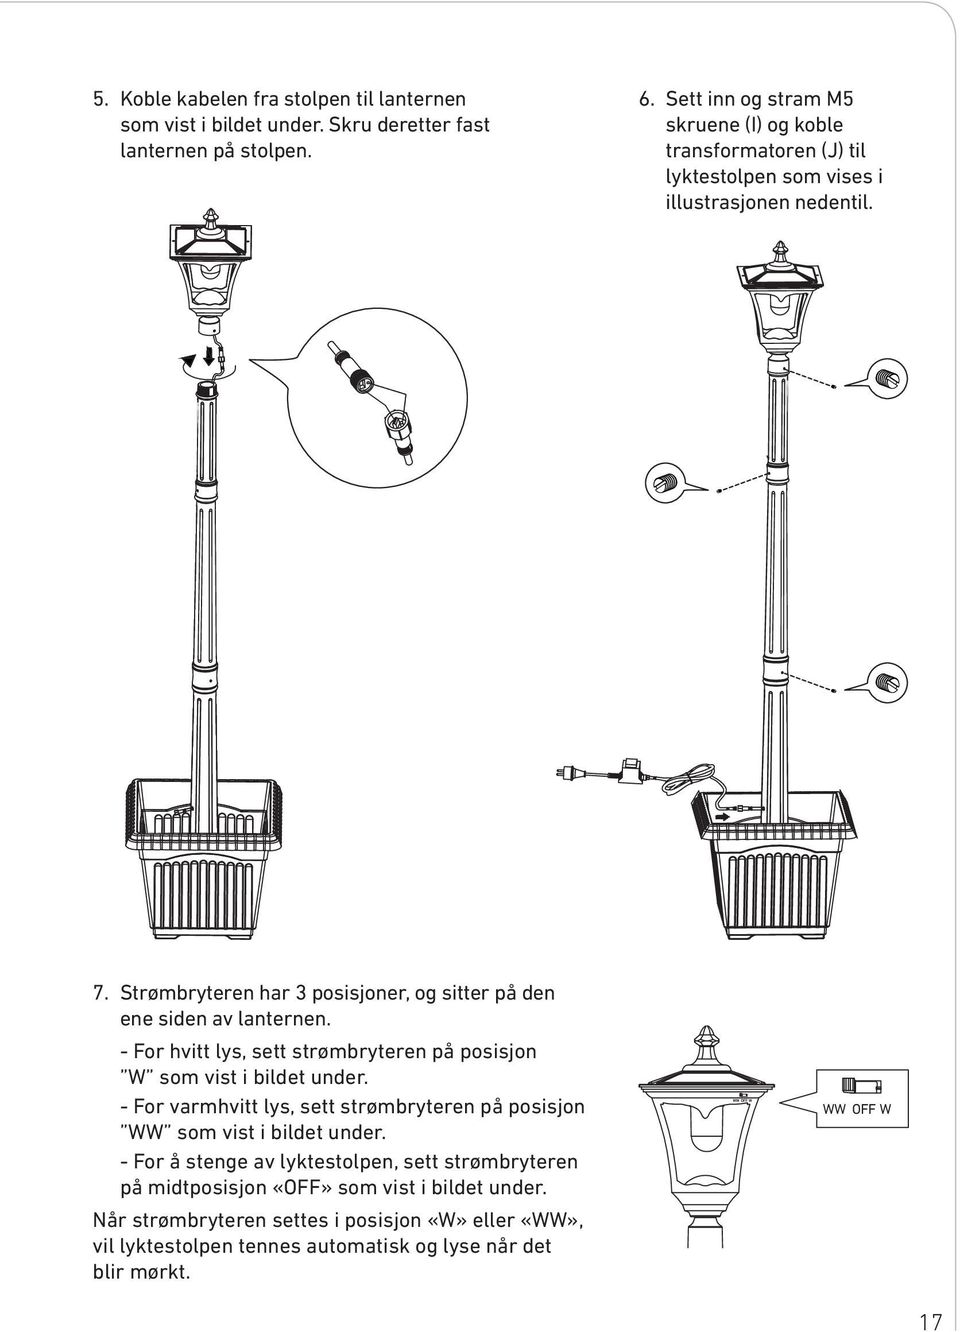 Strømbryteren har 3 posisjoner, og sitter på den ene siden av lanternen. - For hvitt lys, sett strømbryteren på posisjon W som vist i bildet under.